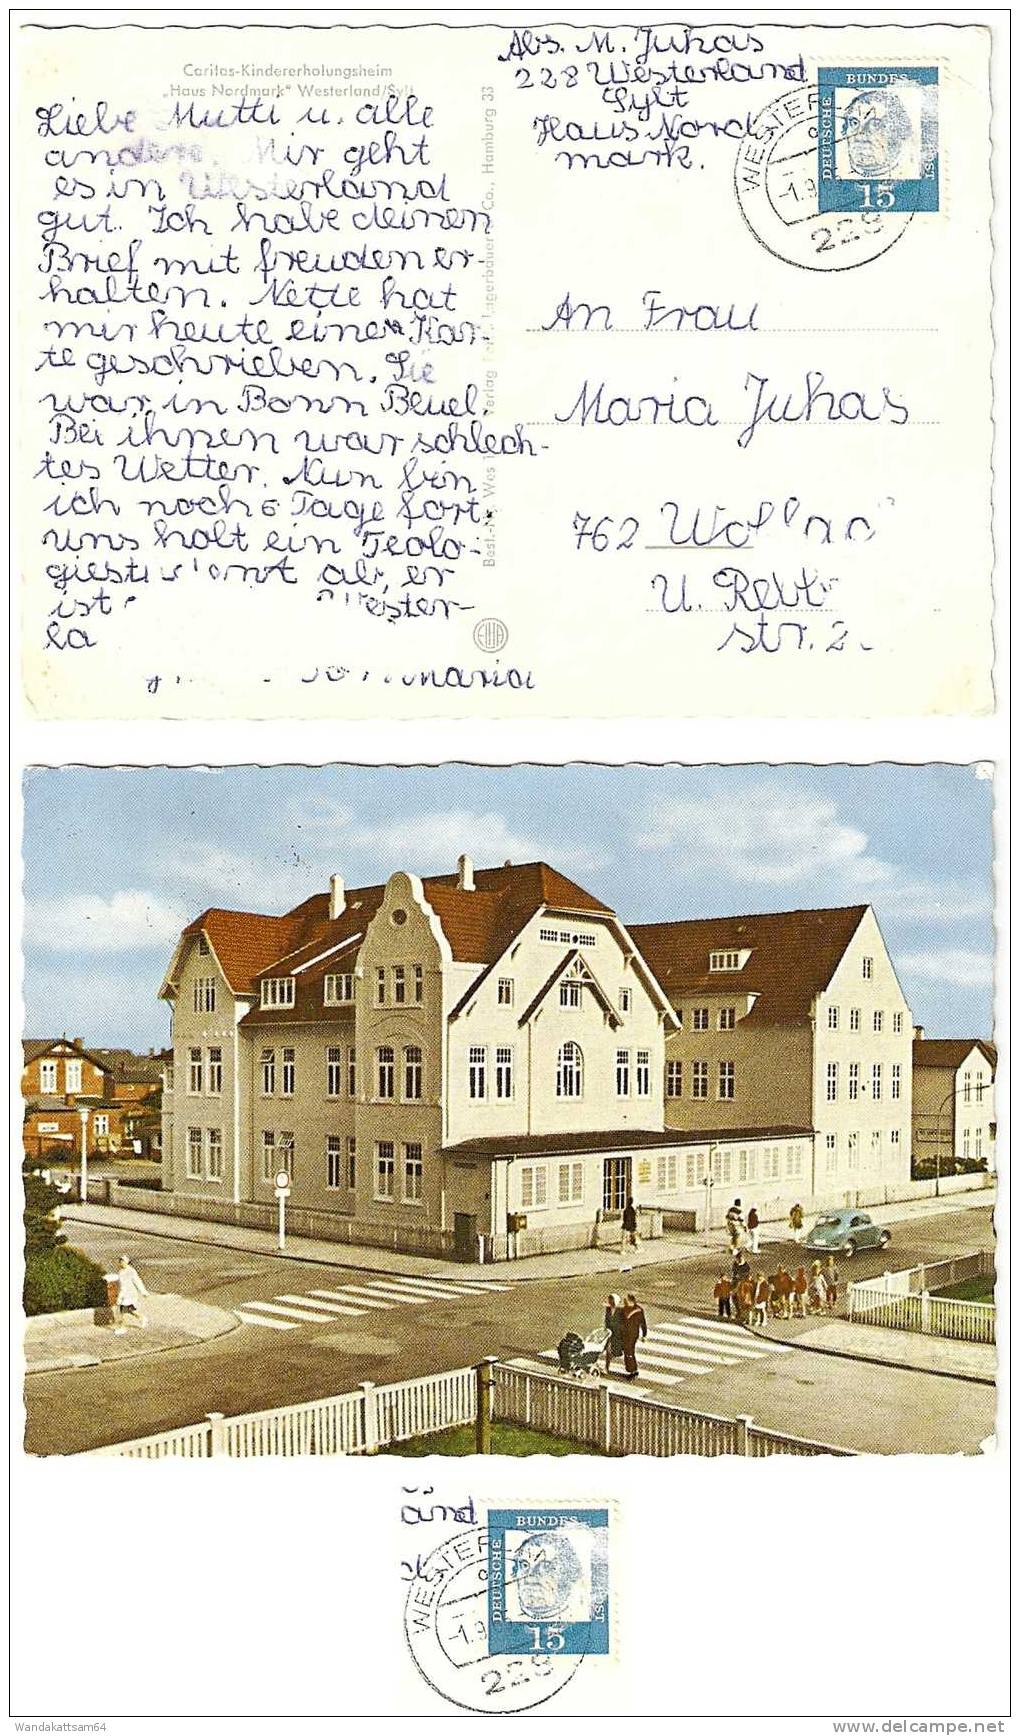 AK Caritas-Kindererholungsheim "Haus Nordmark" Westerland/Sylt -1.9.65.-19 228 WeSTERLAND O Nach 762 Wolfach Mit 1 X 15 - Sylt